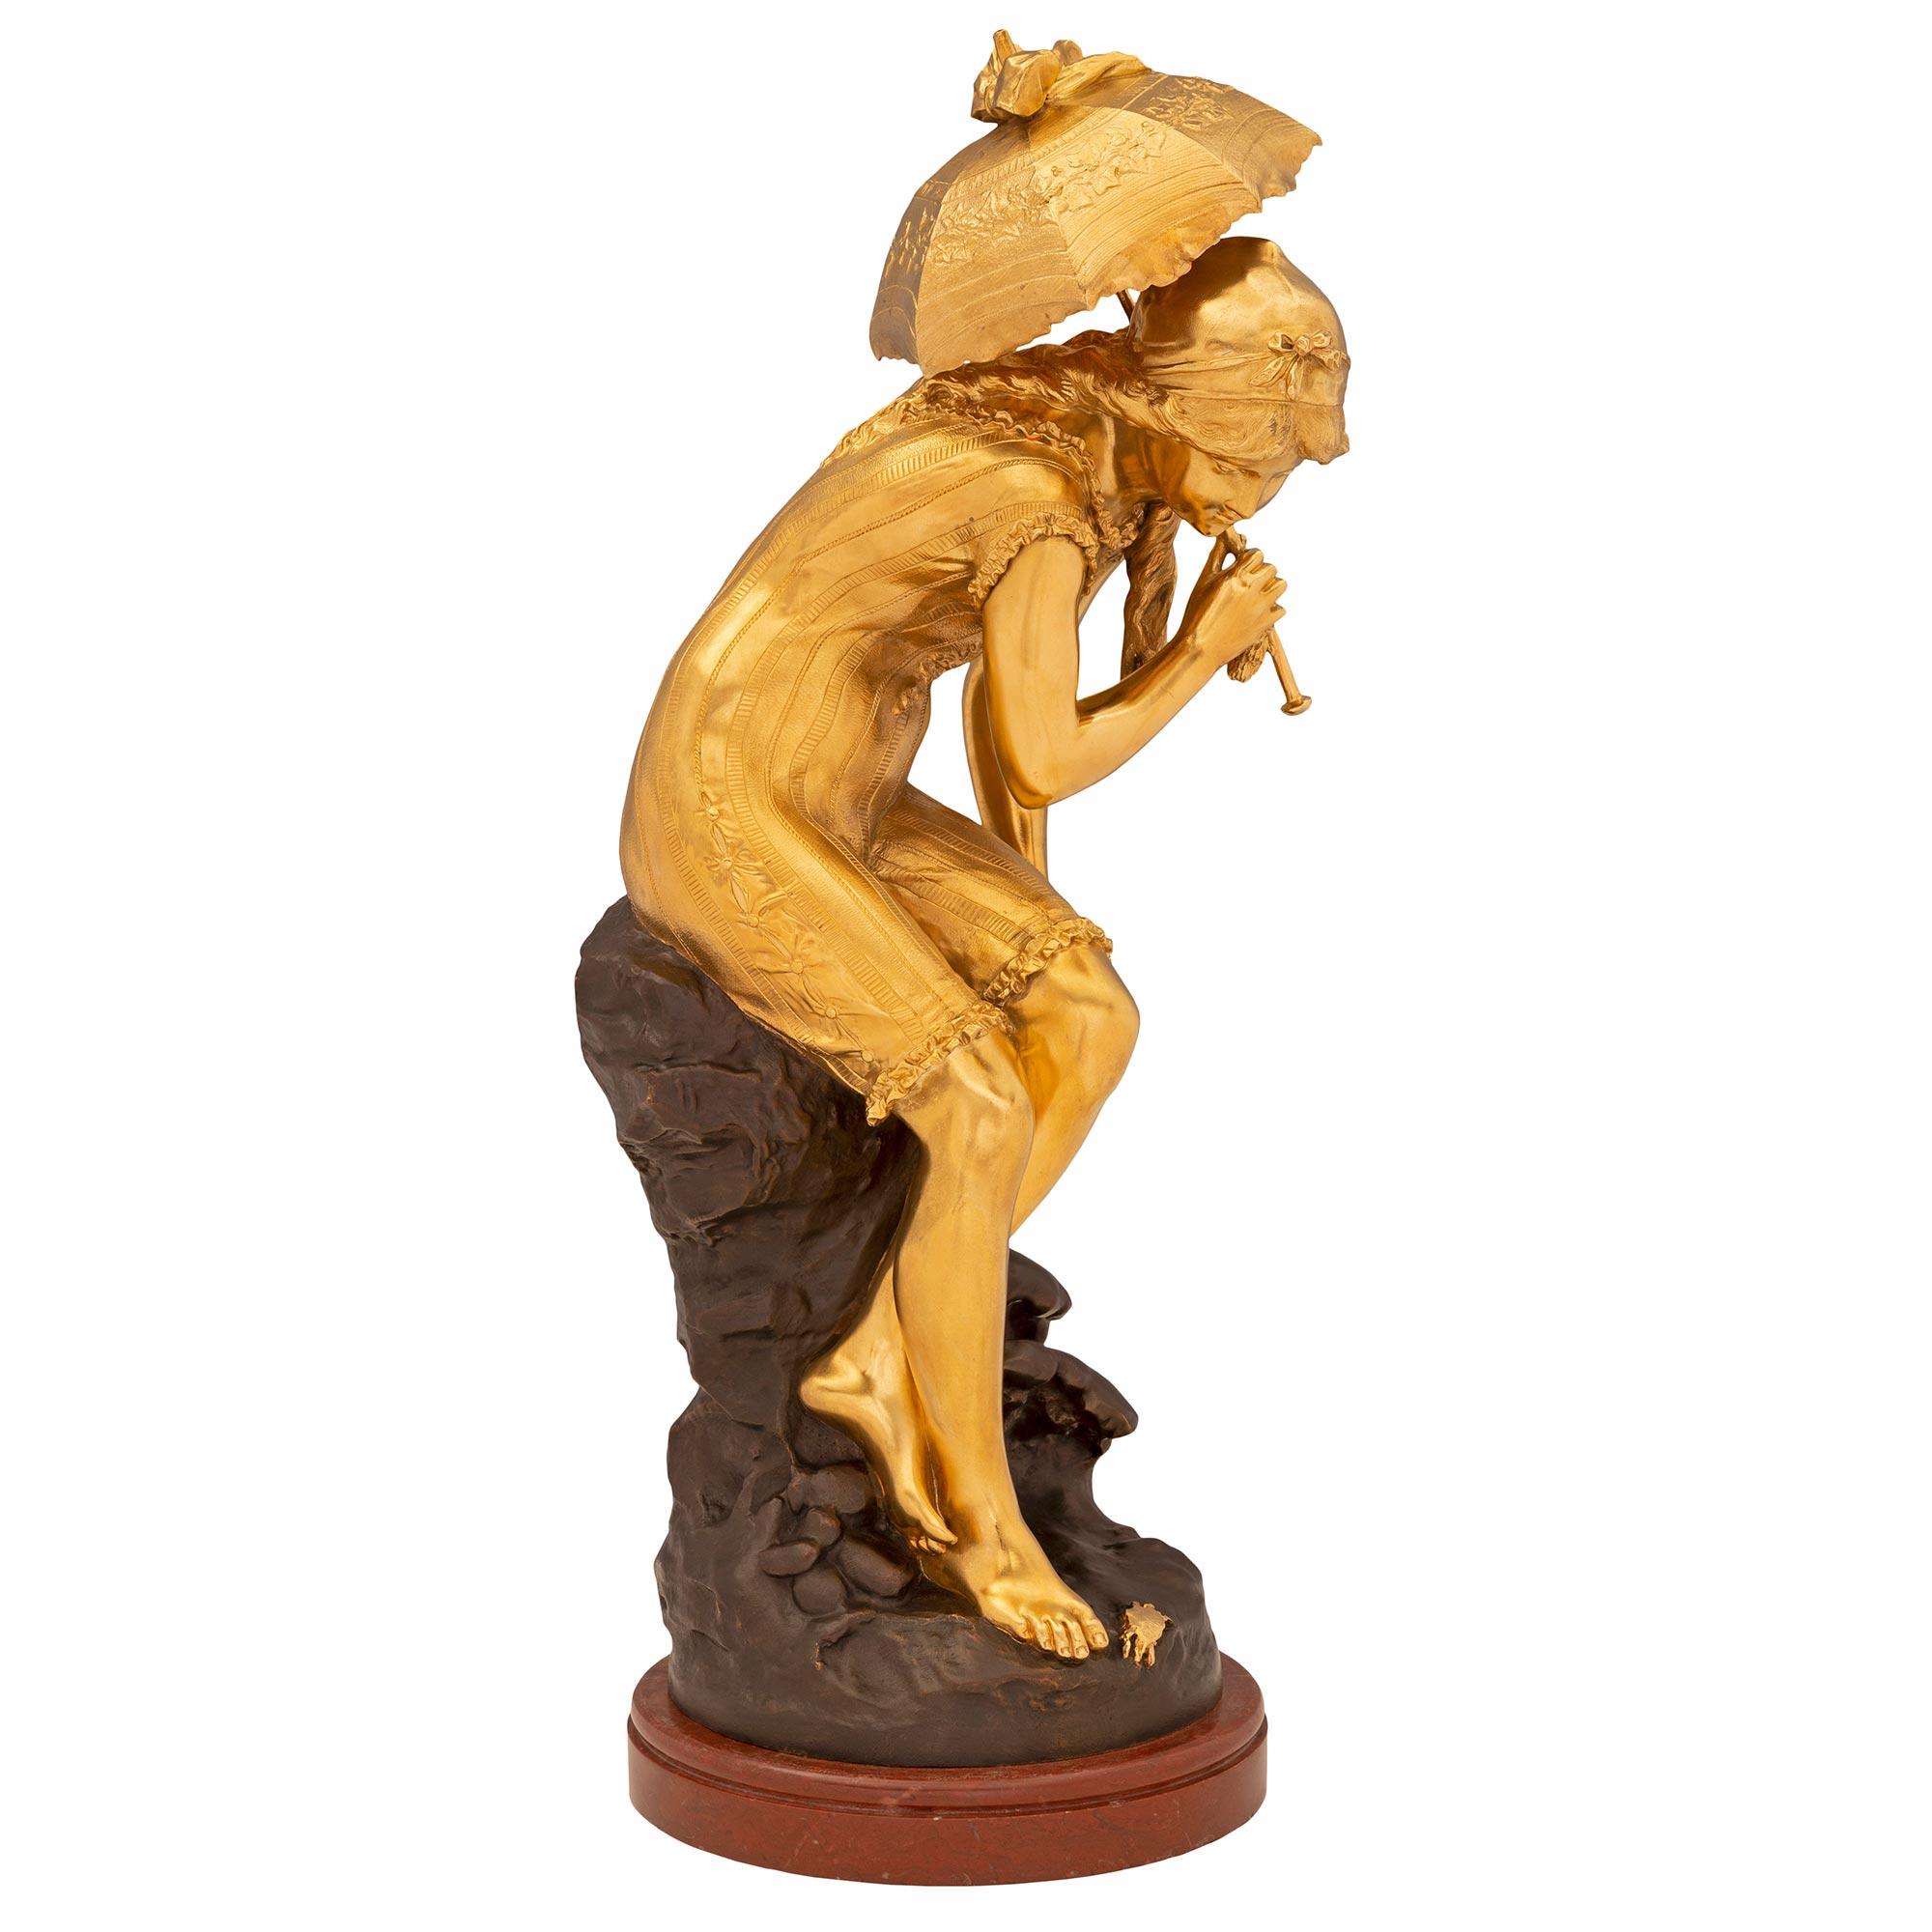 Charmante statue de style Louis XVI du XIXe siècle en bronze patiné, bronze doré et marbre Rouge Griotte, signée Moreau. La statue est surélevée par un socle circulaire en marbre Rouge Griotte avec une fine bande tachetée enveloppante. Au-dessus, on